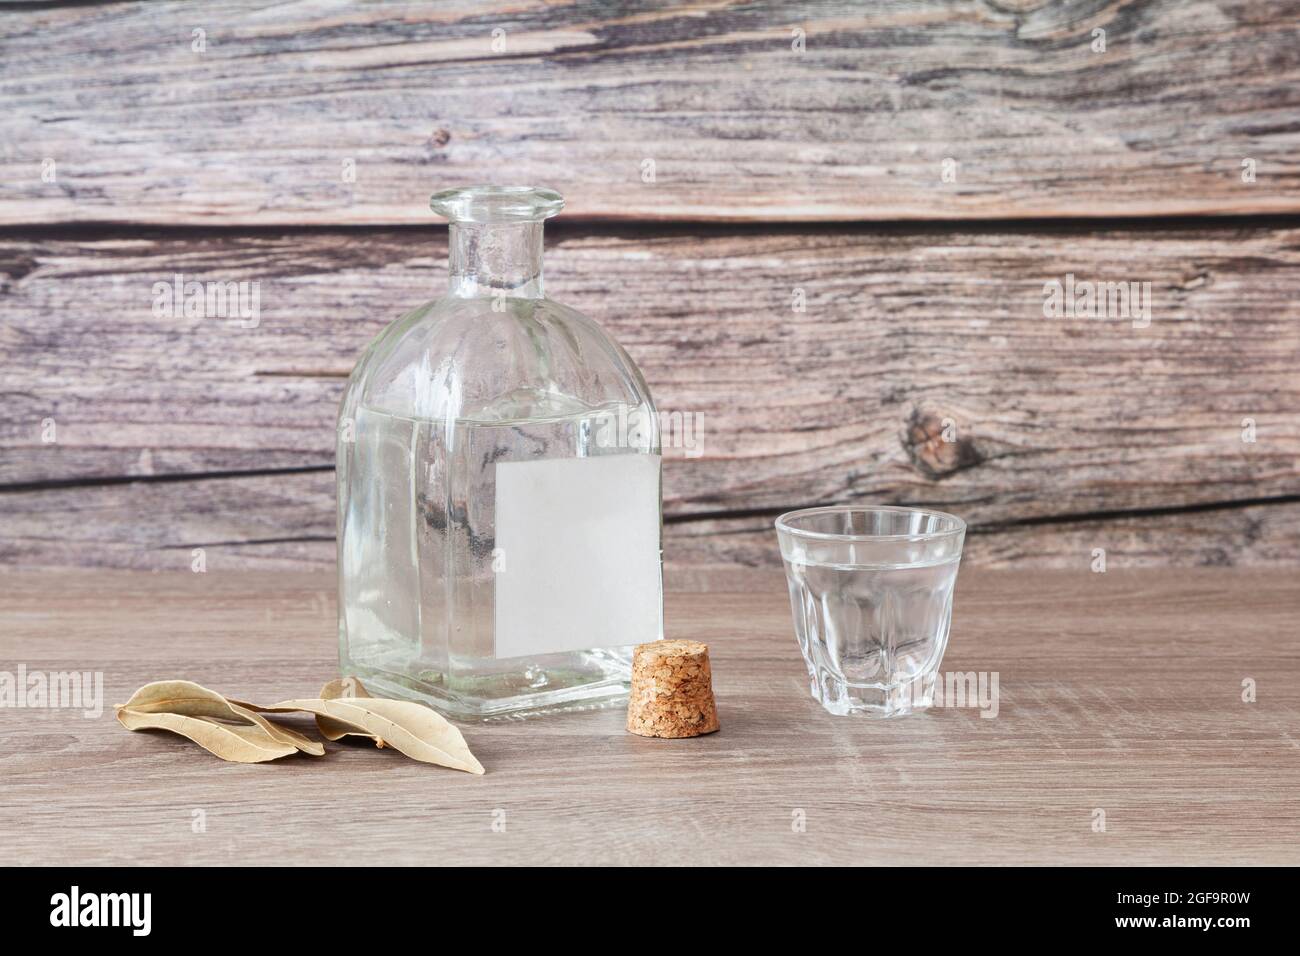 Auf einem Holztisch befindet sich eine ungekorkte Flasche Schnaps mit einem leeren Etikett und einem vollen Schnapsglas. Der Stopfen der Flasche ist neben ihr und es gibt al Stockfoto